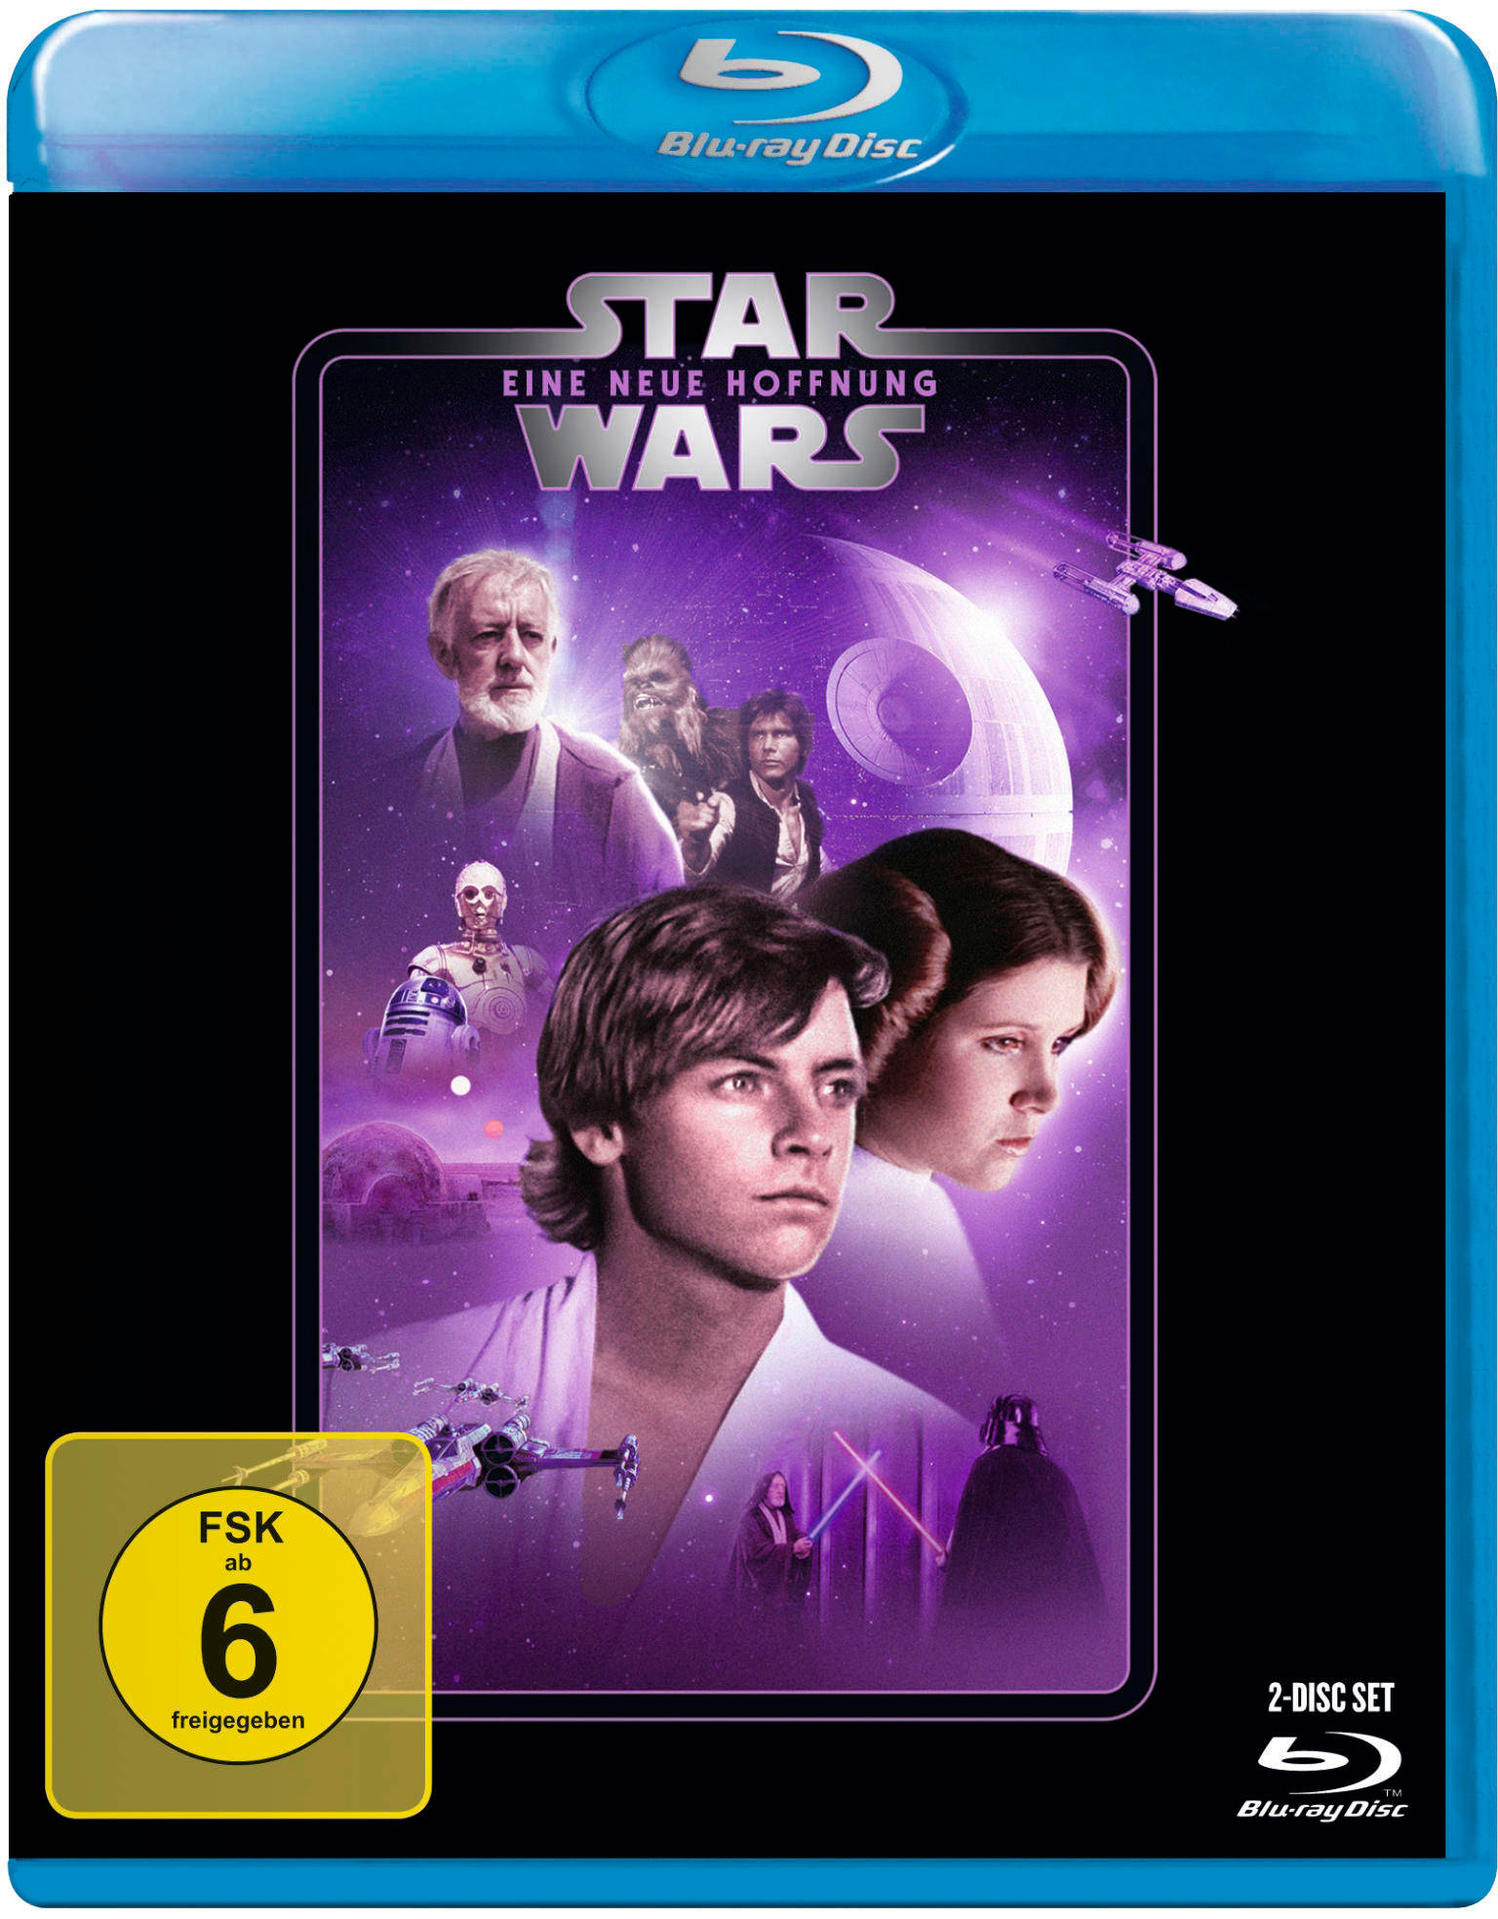 IV neue Blu-ray Wars: Star Episode Eine - Hoffnung